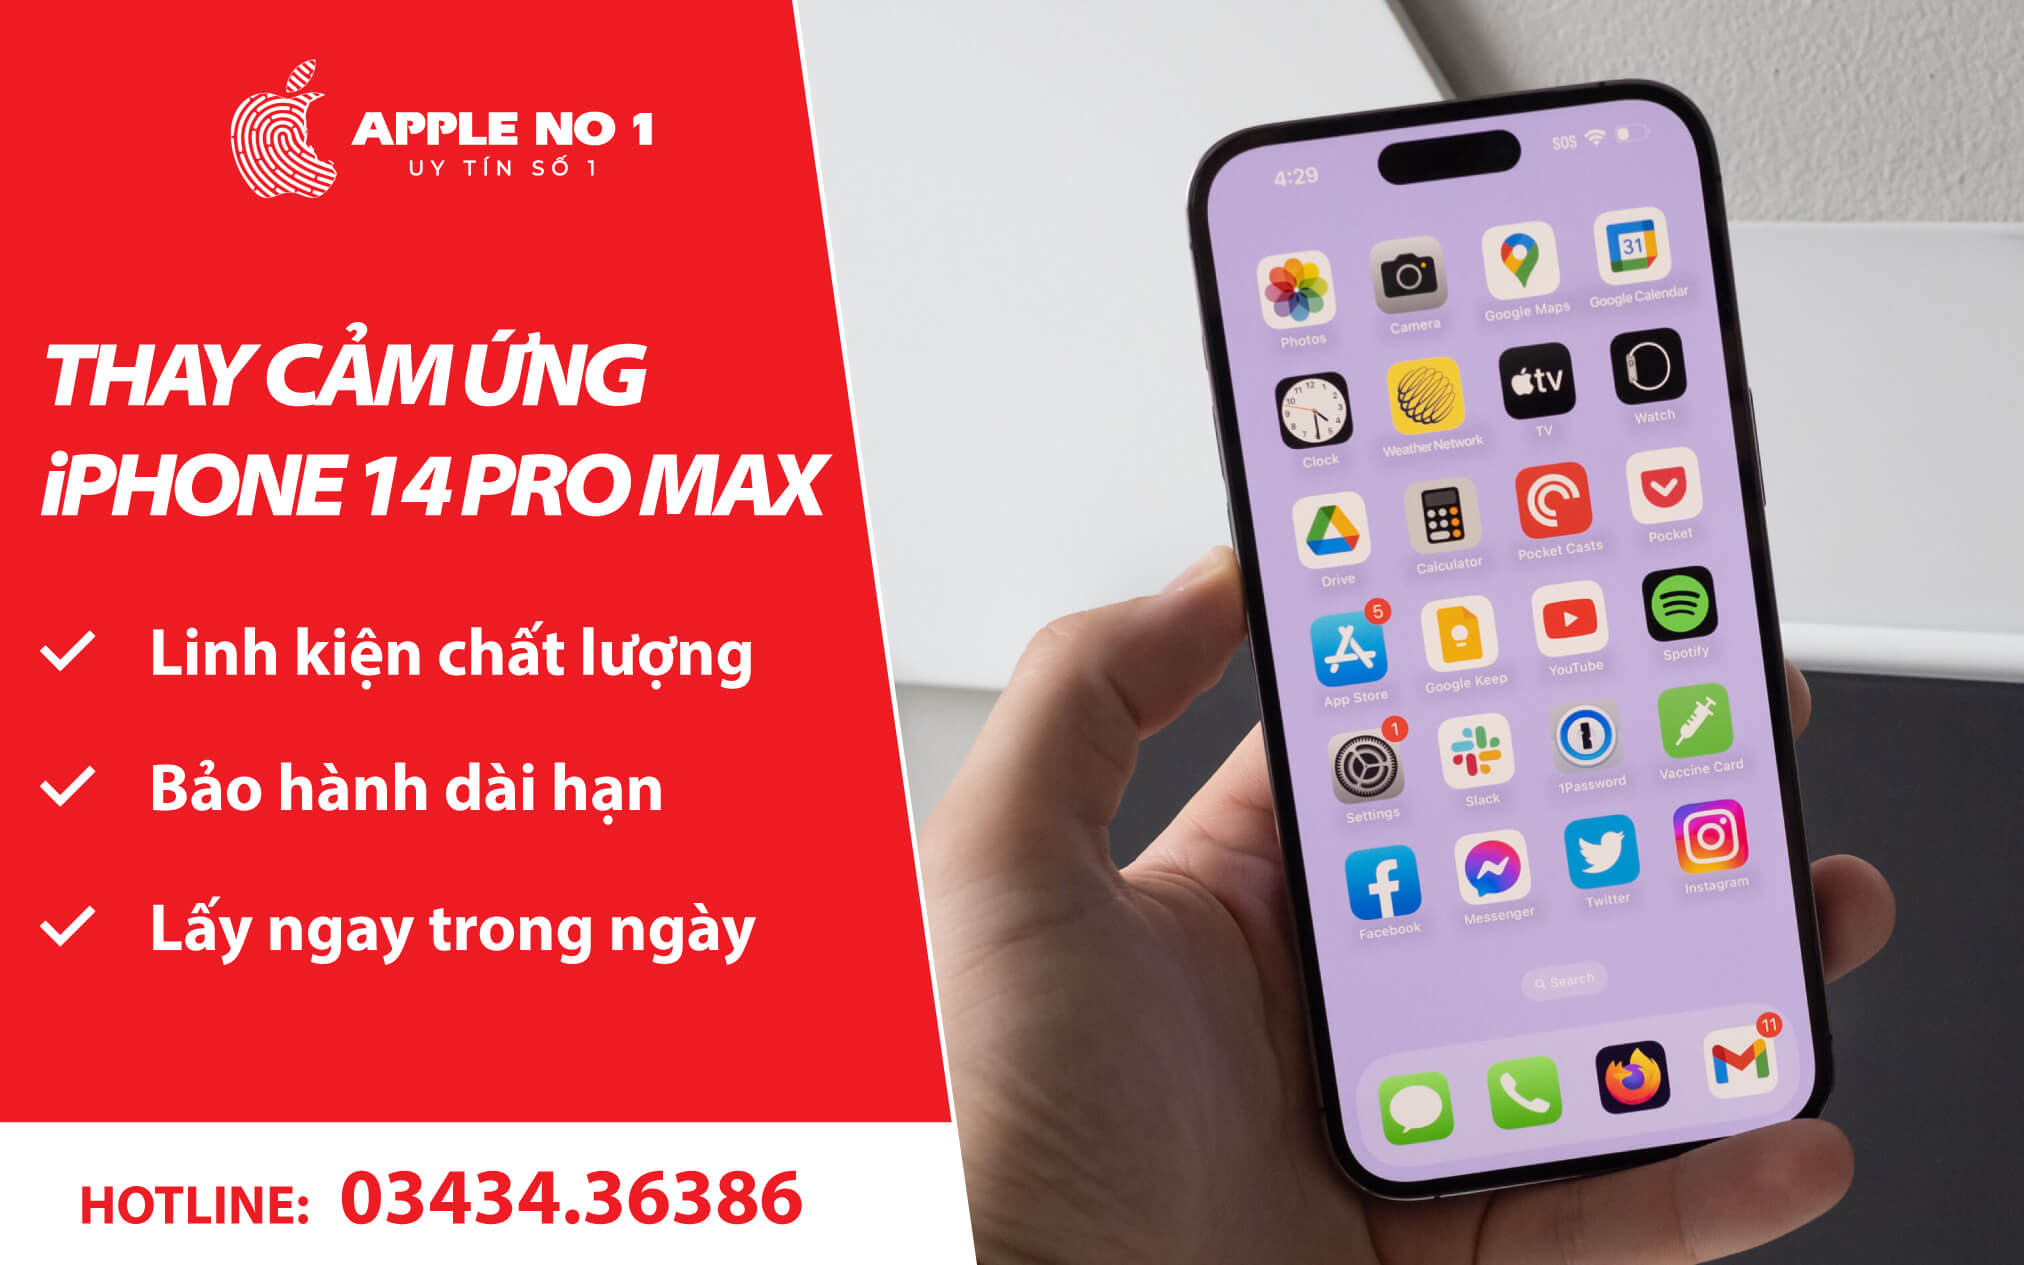 Dịch vụ thay kính cảm ứng cho iPhone 14 Pro Max lấy ngay, giá tốt tại APPLENO1.VN